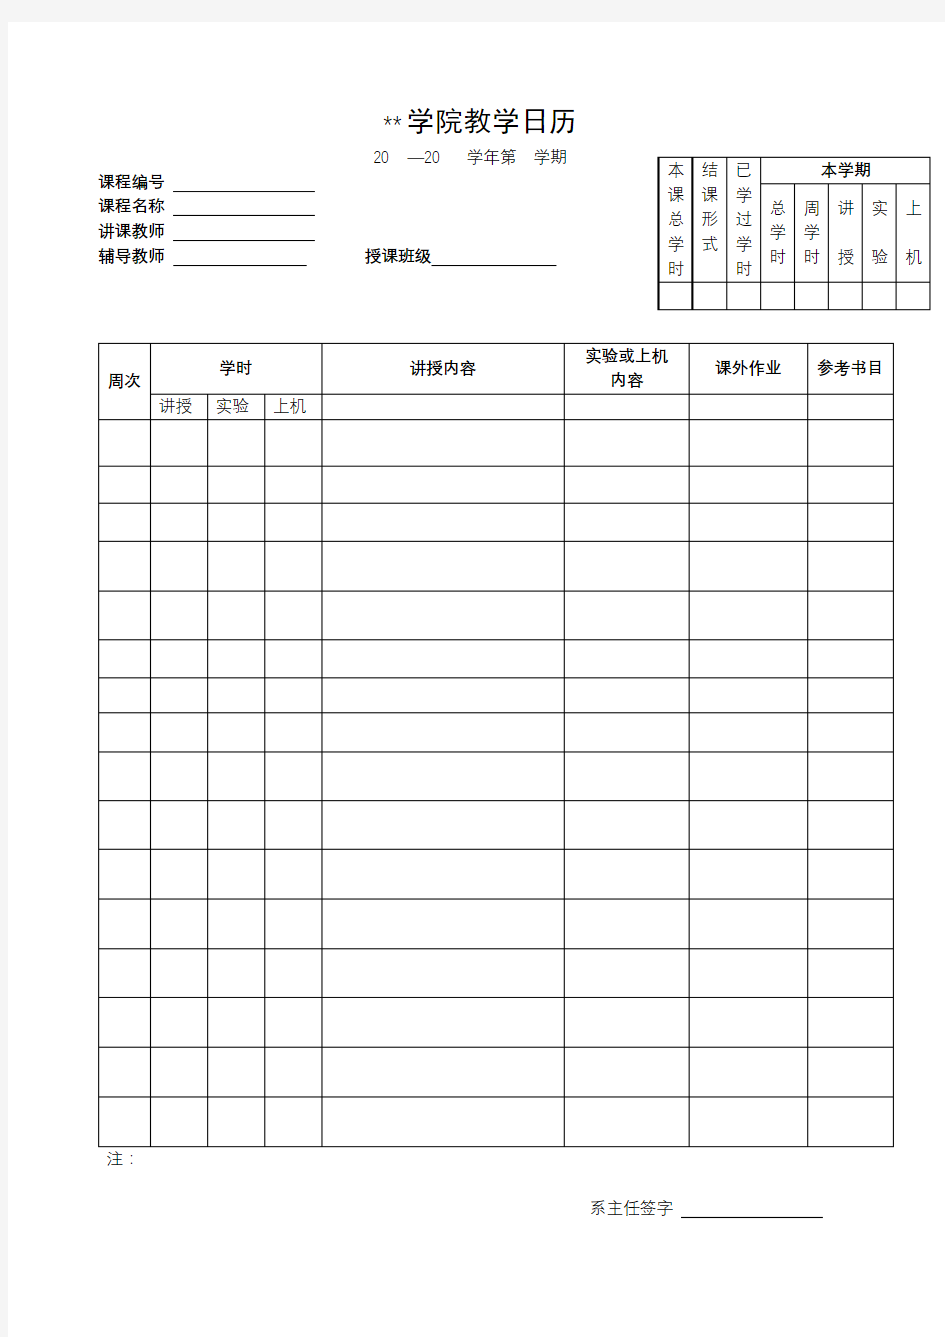 北京印刷学院教学日历【模板】